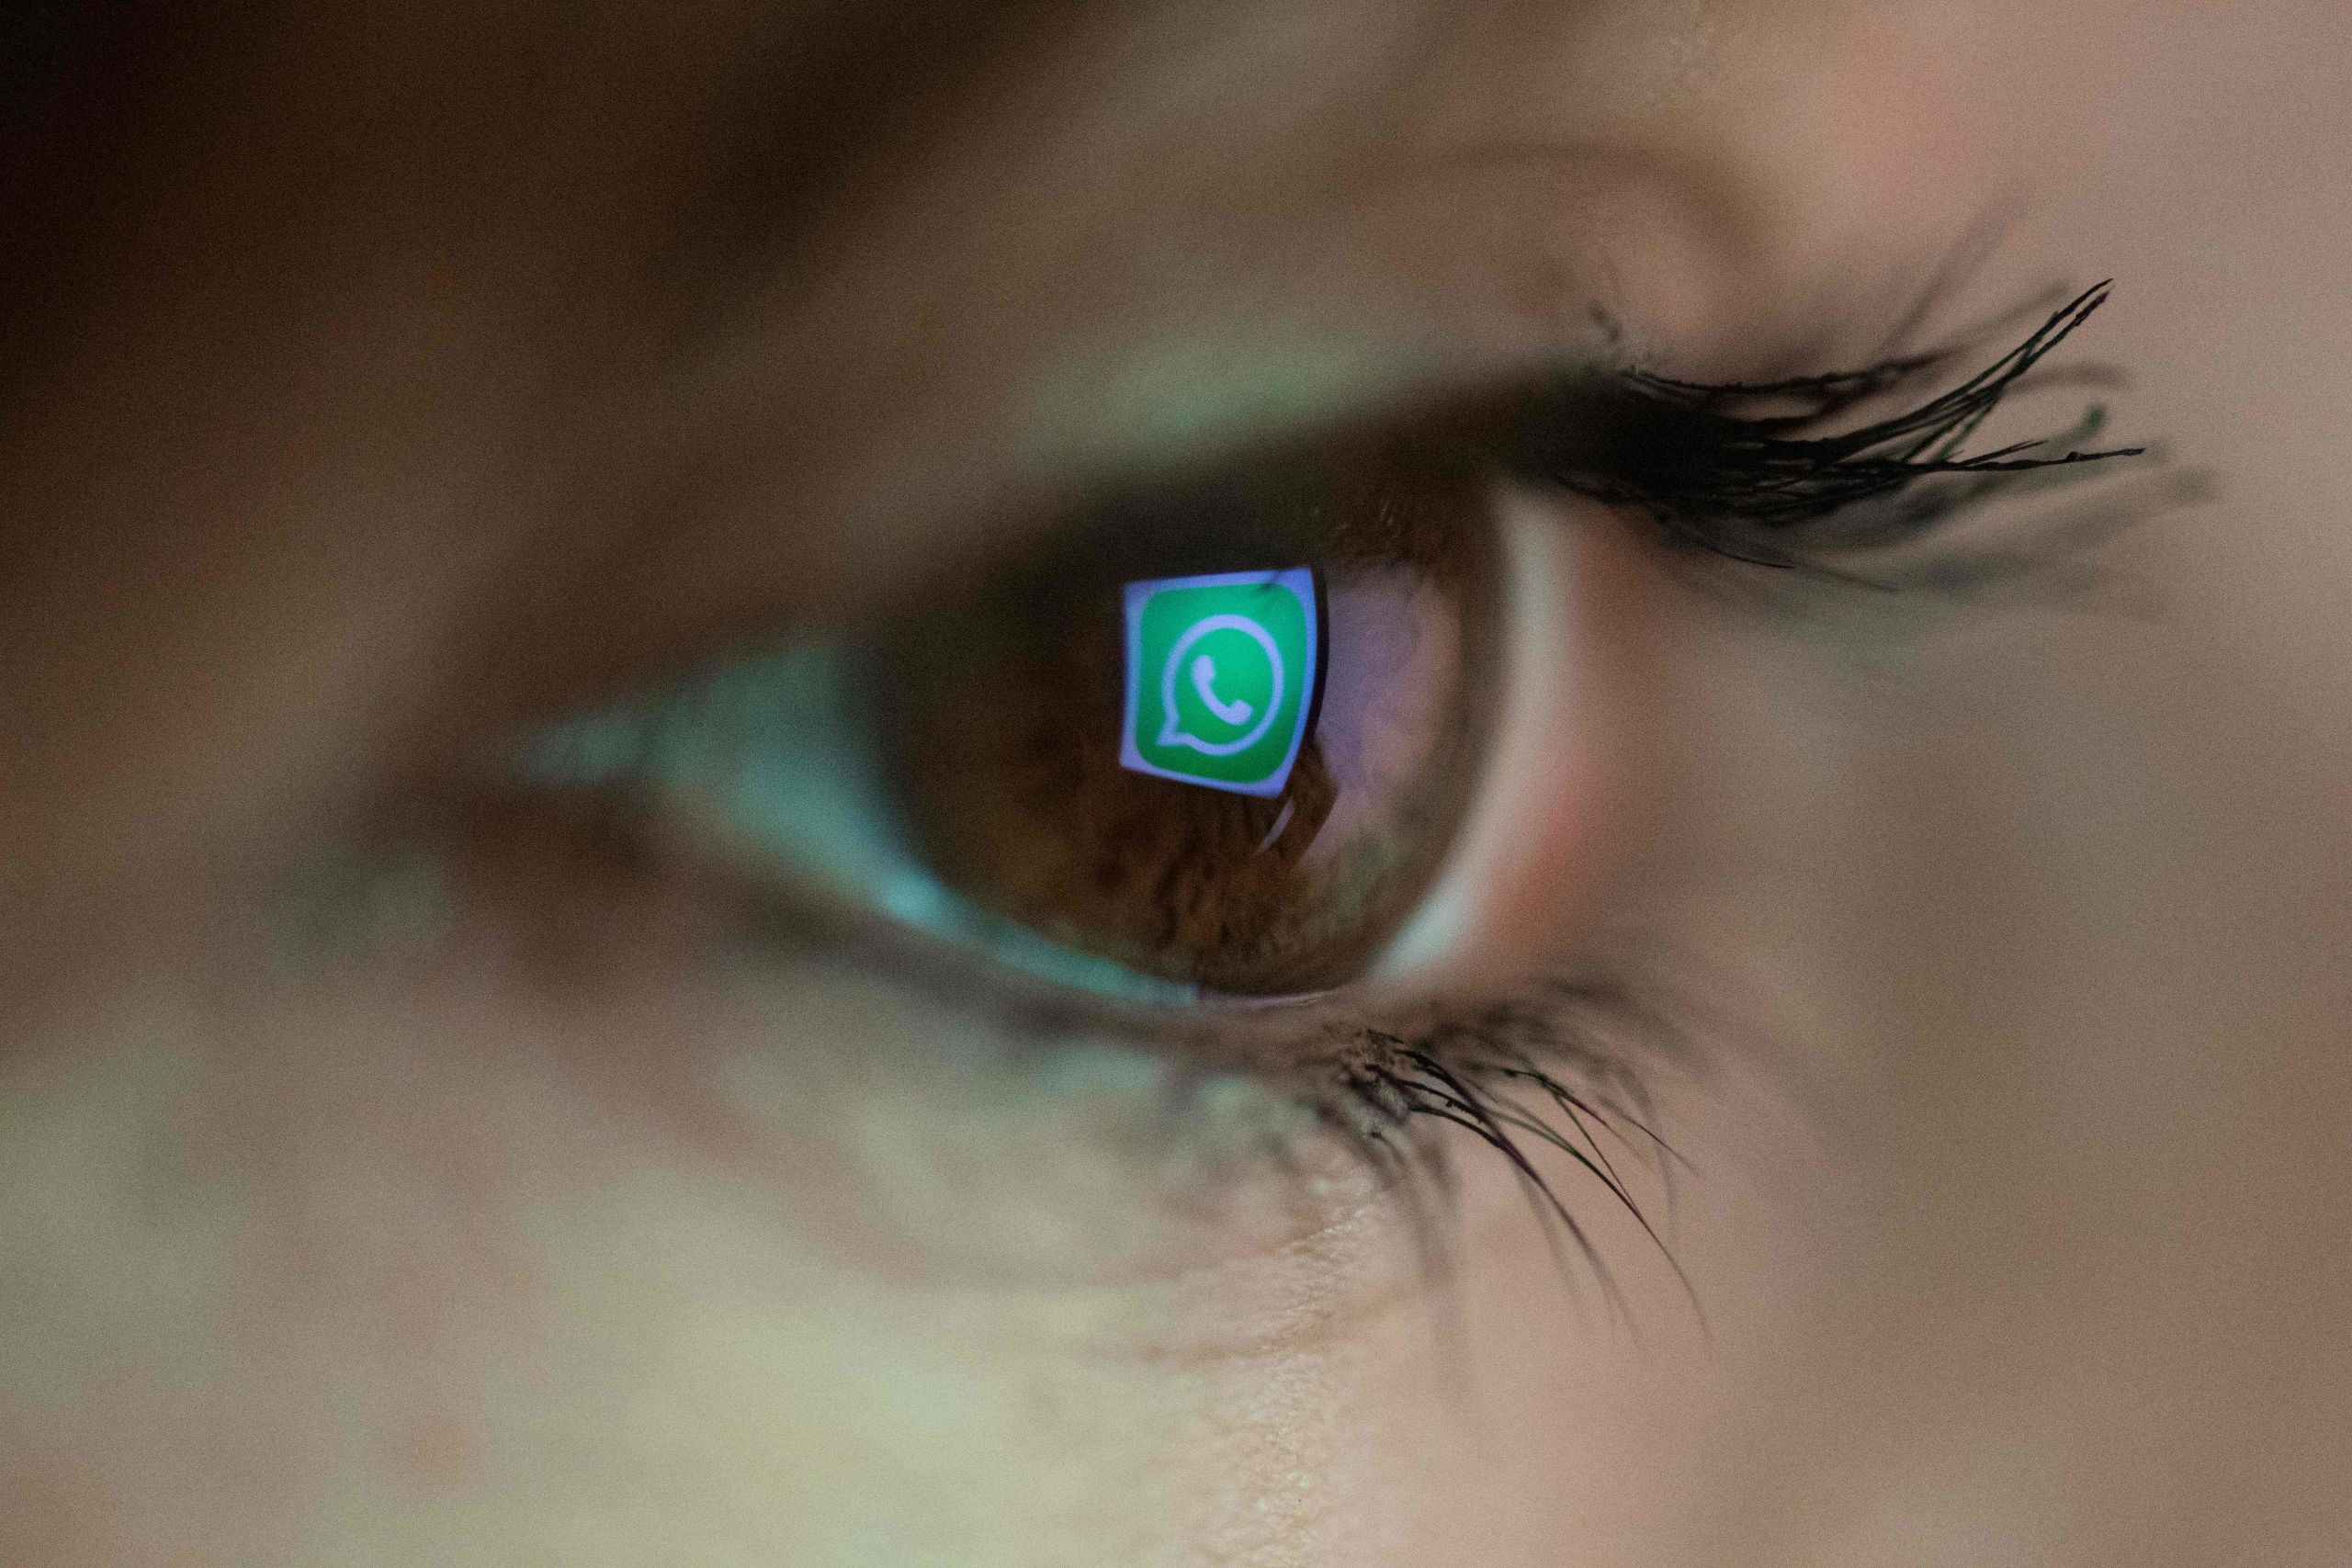 Justitieminister Grapperhaus wil dat justitie toegang krijgt tot versleutelde chatberichten op diensten als WhatsApp en Telegram als daarin kinderporno wordt gedeeld. 